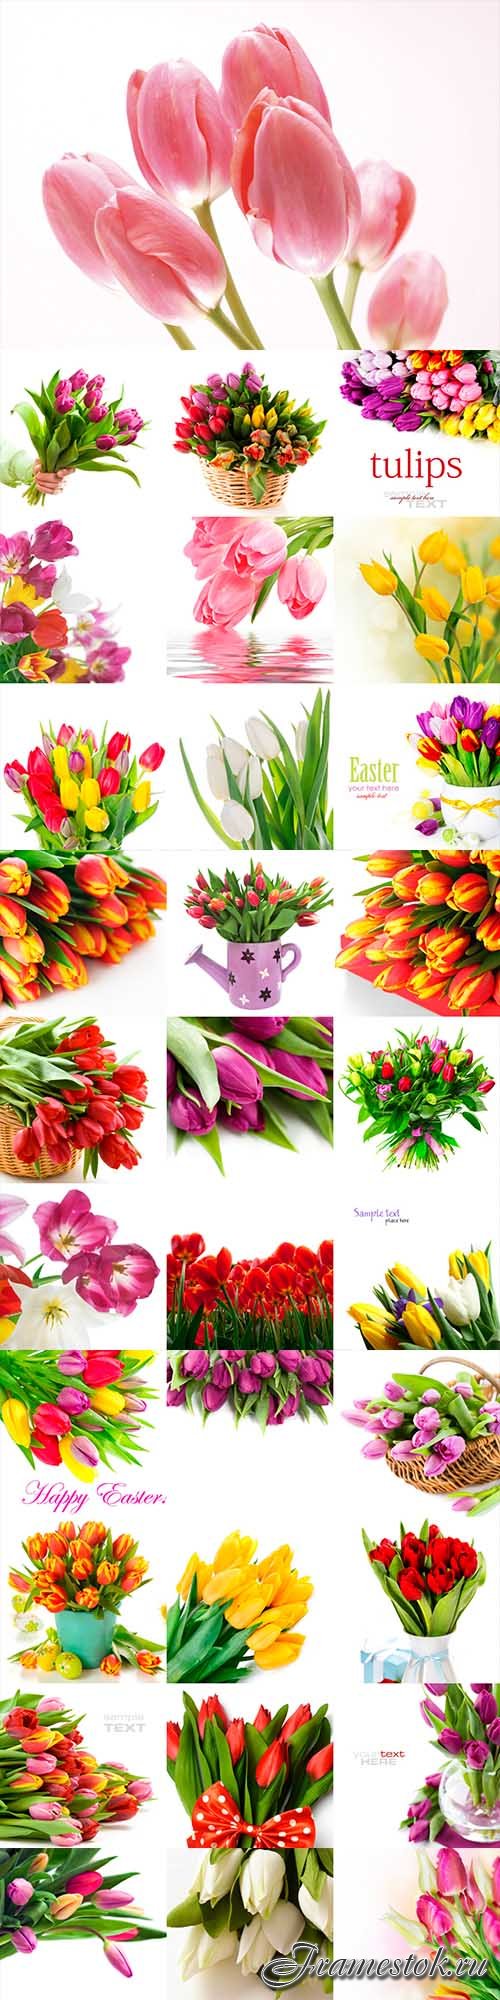 Tulips on white background 110 stock photo